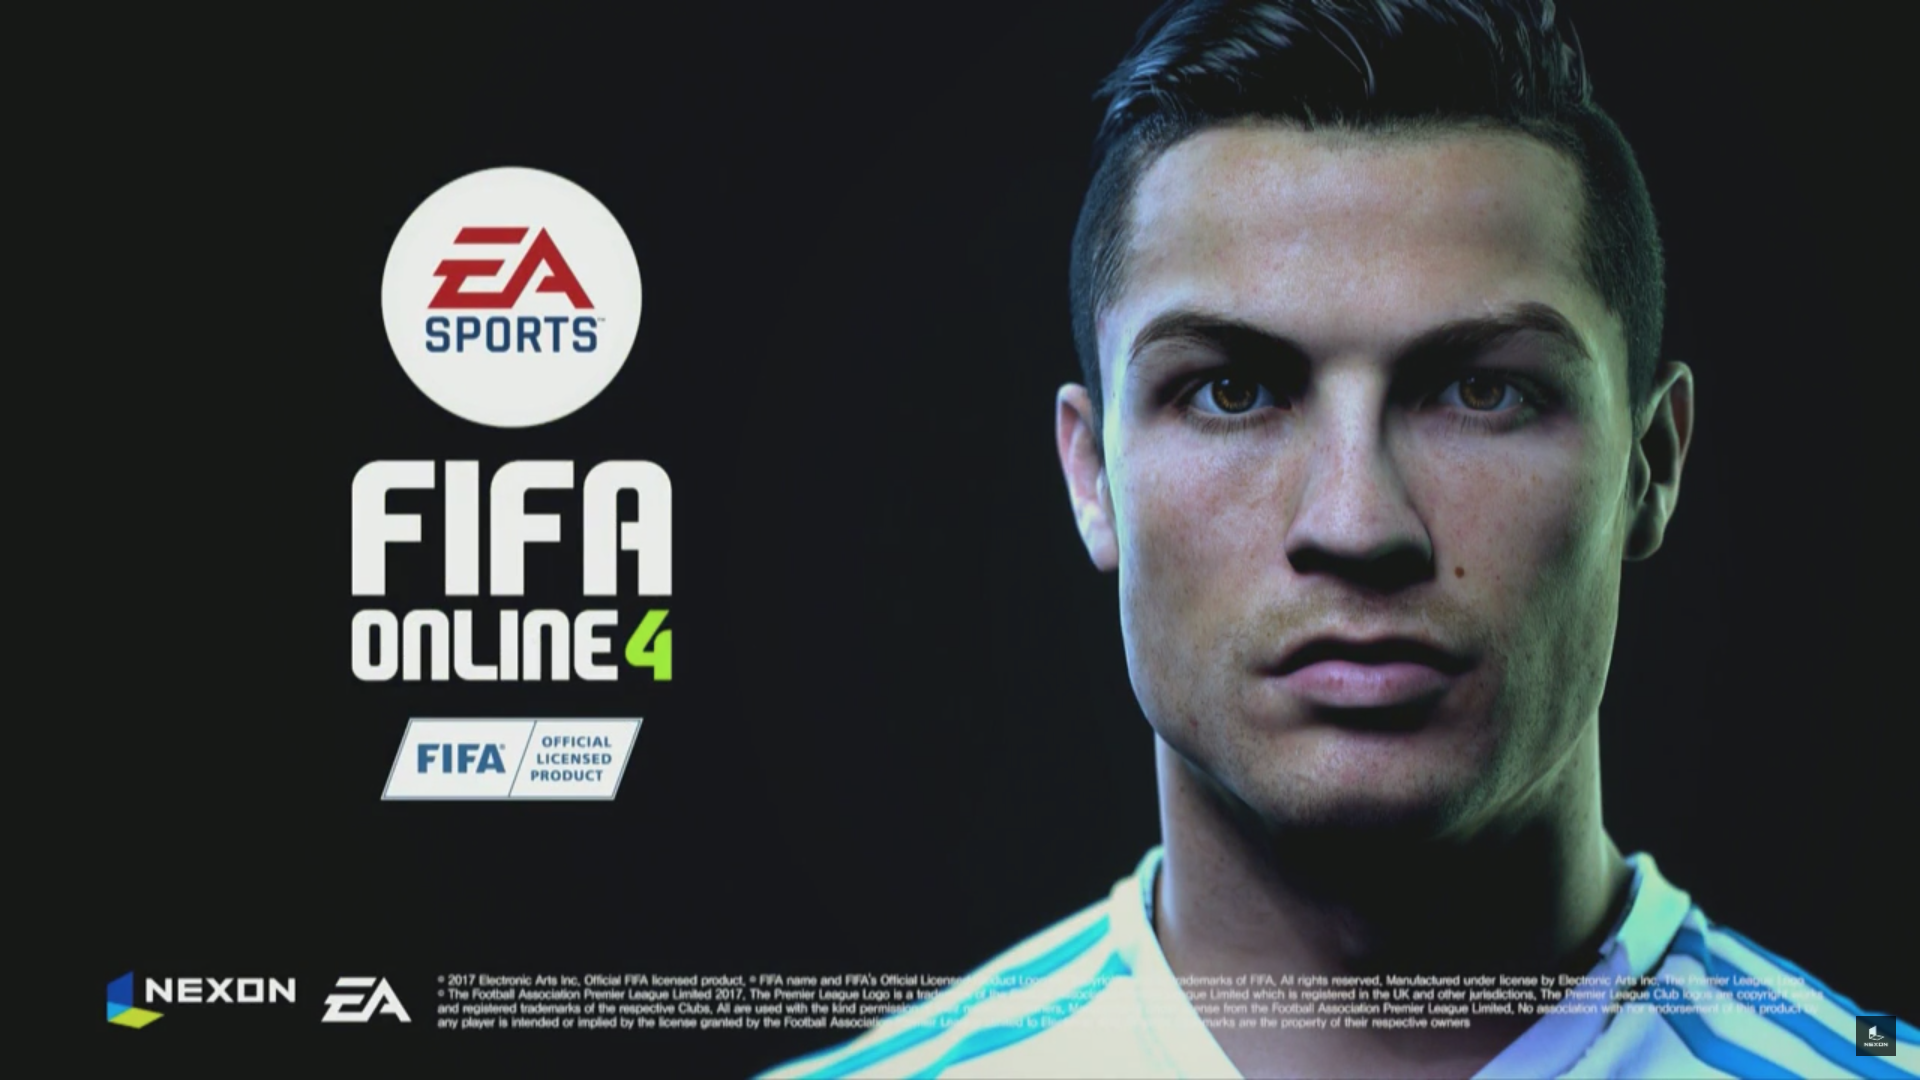 [Chính thức] Nexon và EA công bố dự án FIFA Online 4